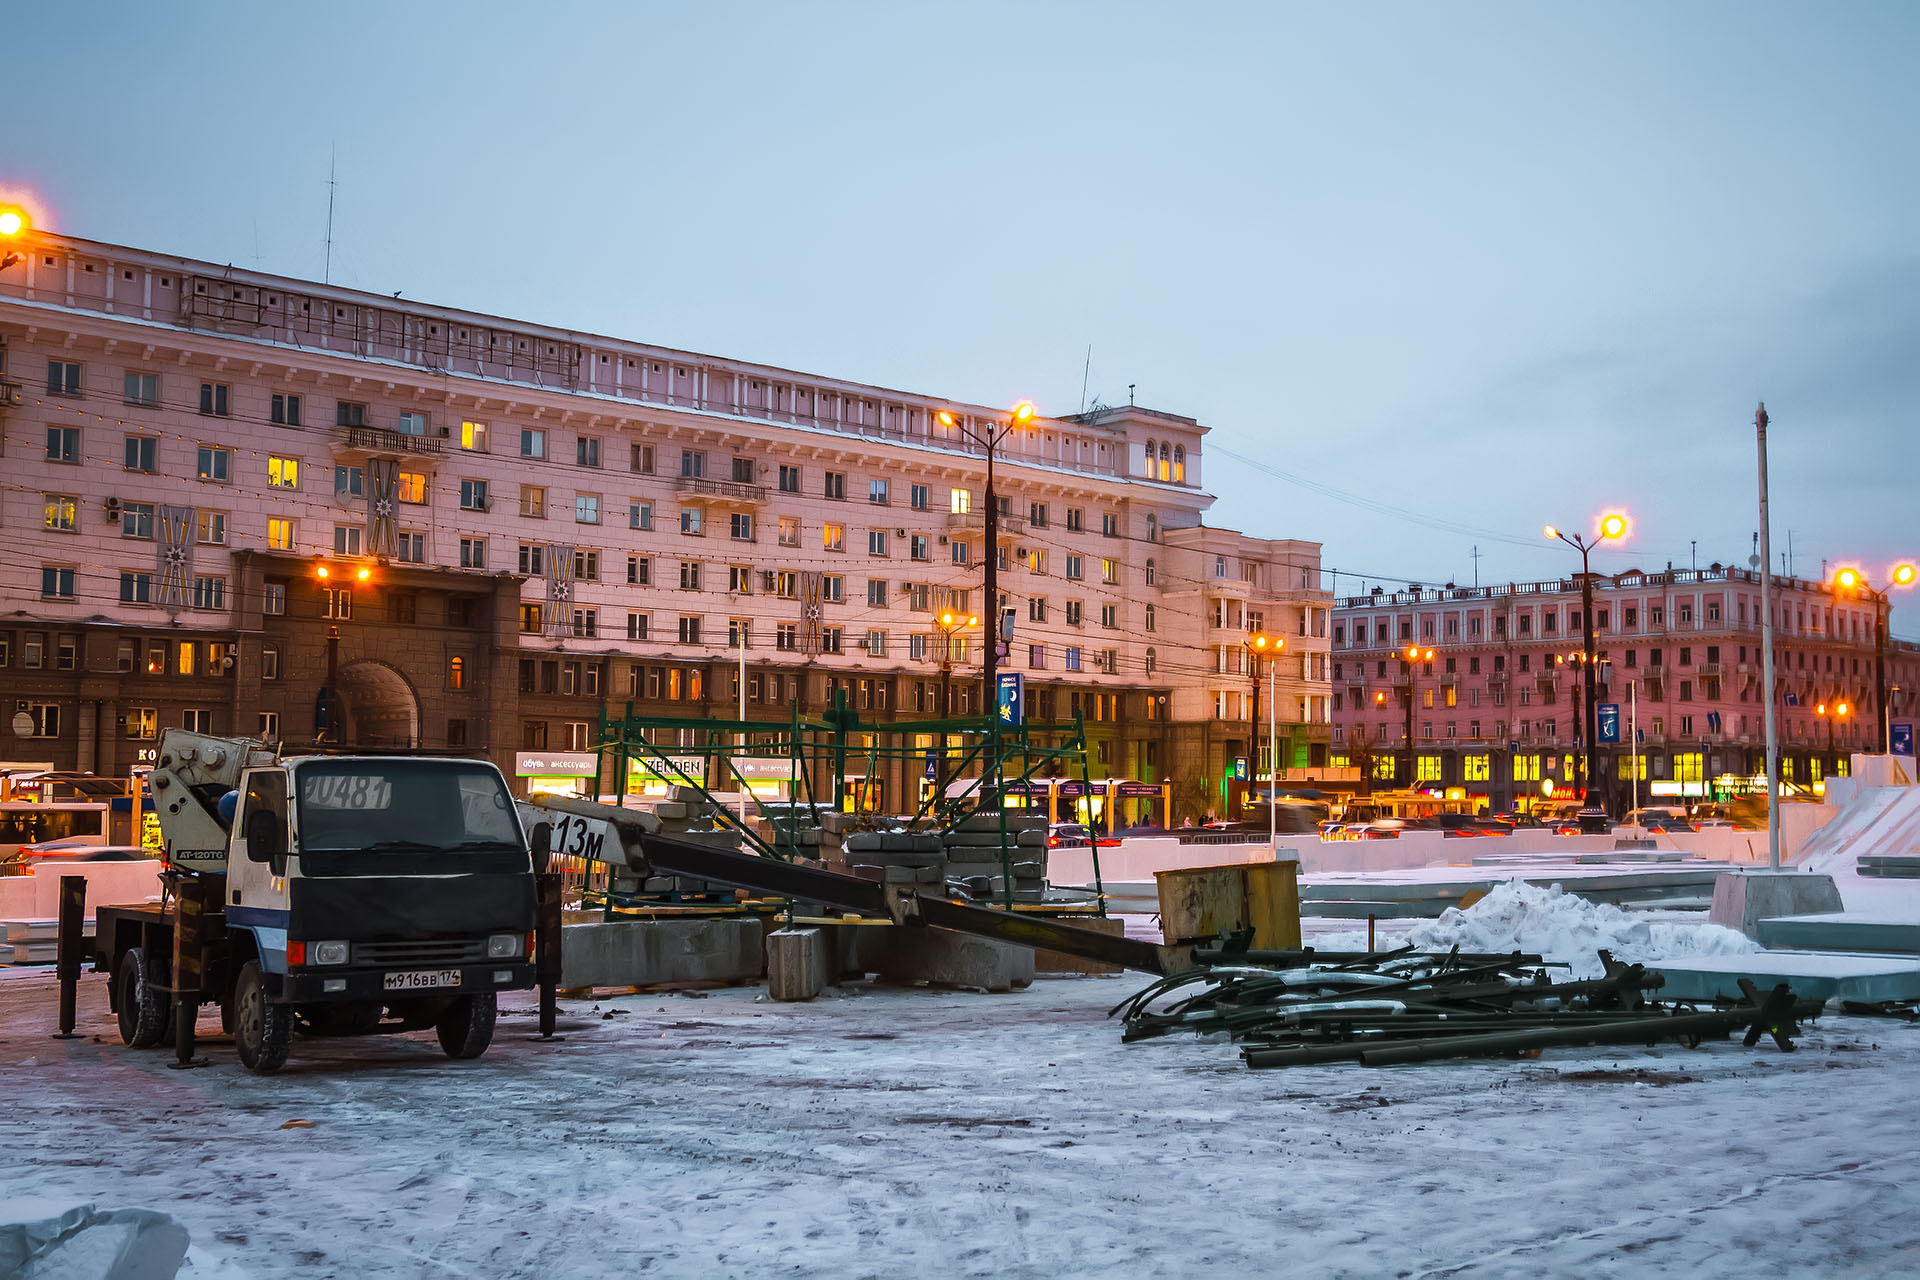 Открыть ледовый городок на площади Революции планируют 25 декабря